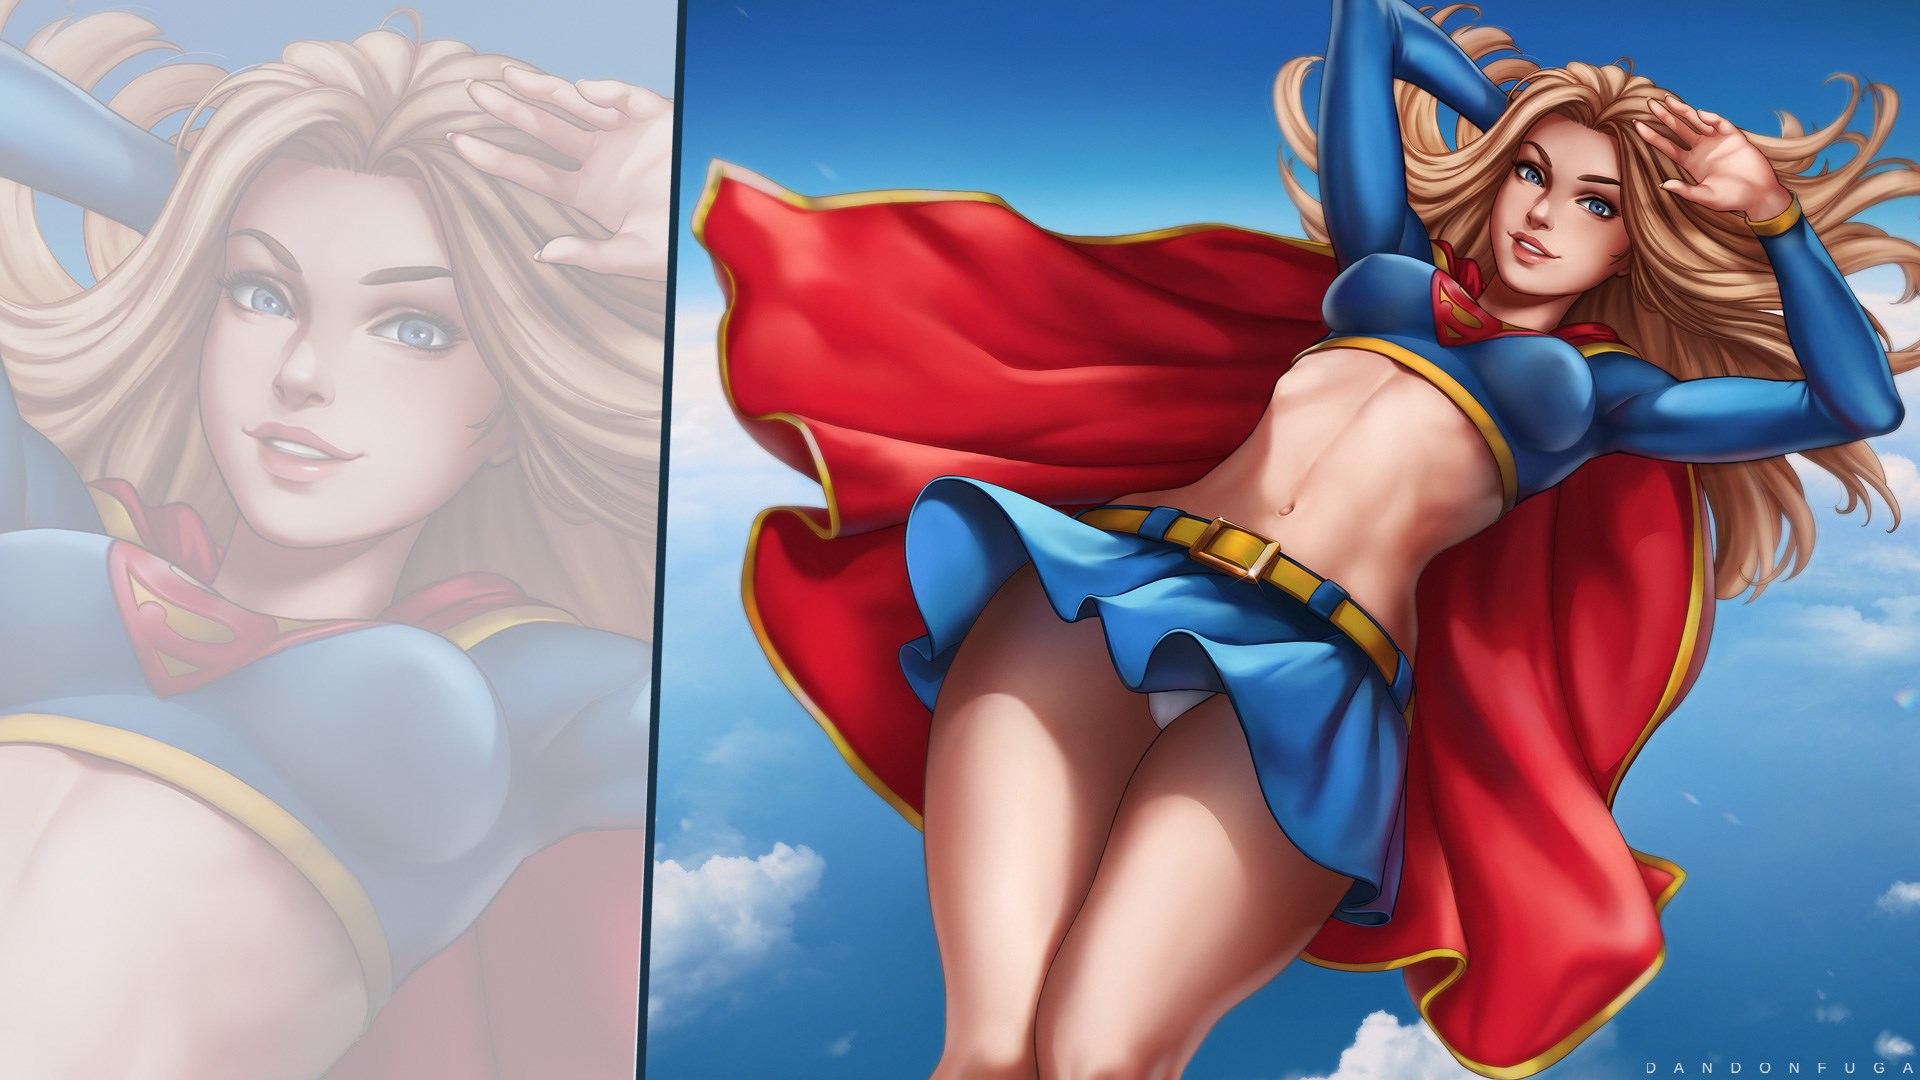 General 1920x1080 Dandonfuga Supergirl blonde blue eyes looking at viewer cape superheroines watermarked digital art